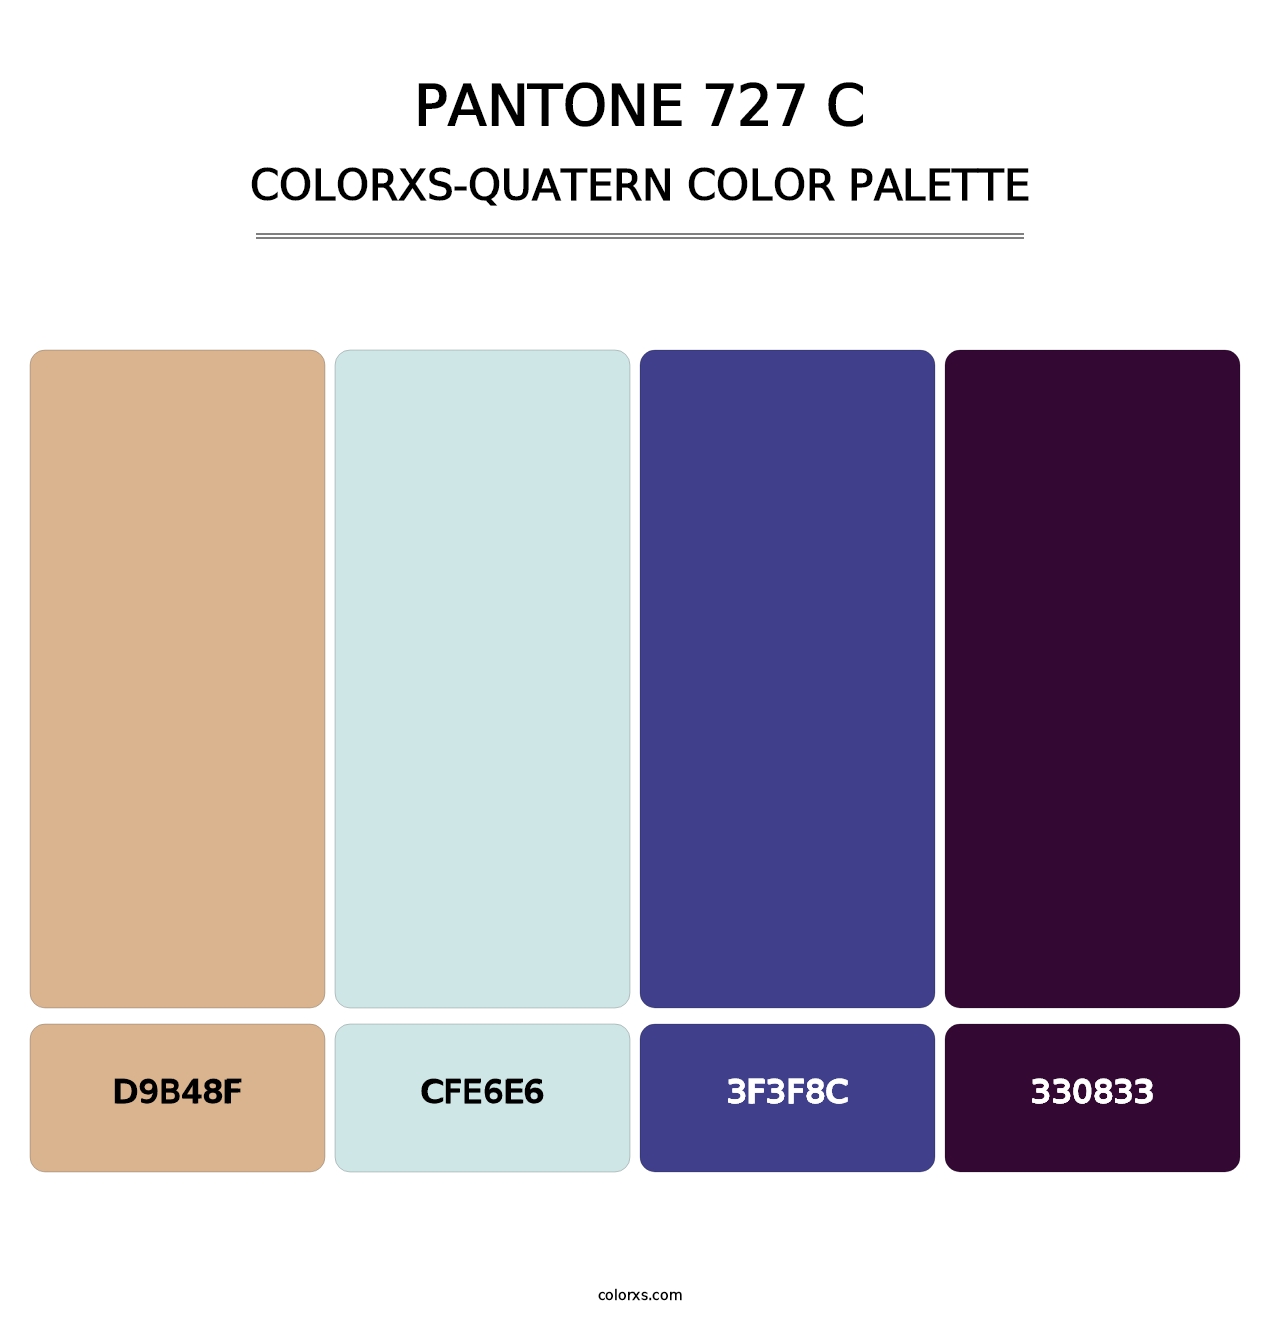 PANTONE 727 C - Colorxs Quatern Palette